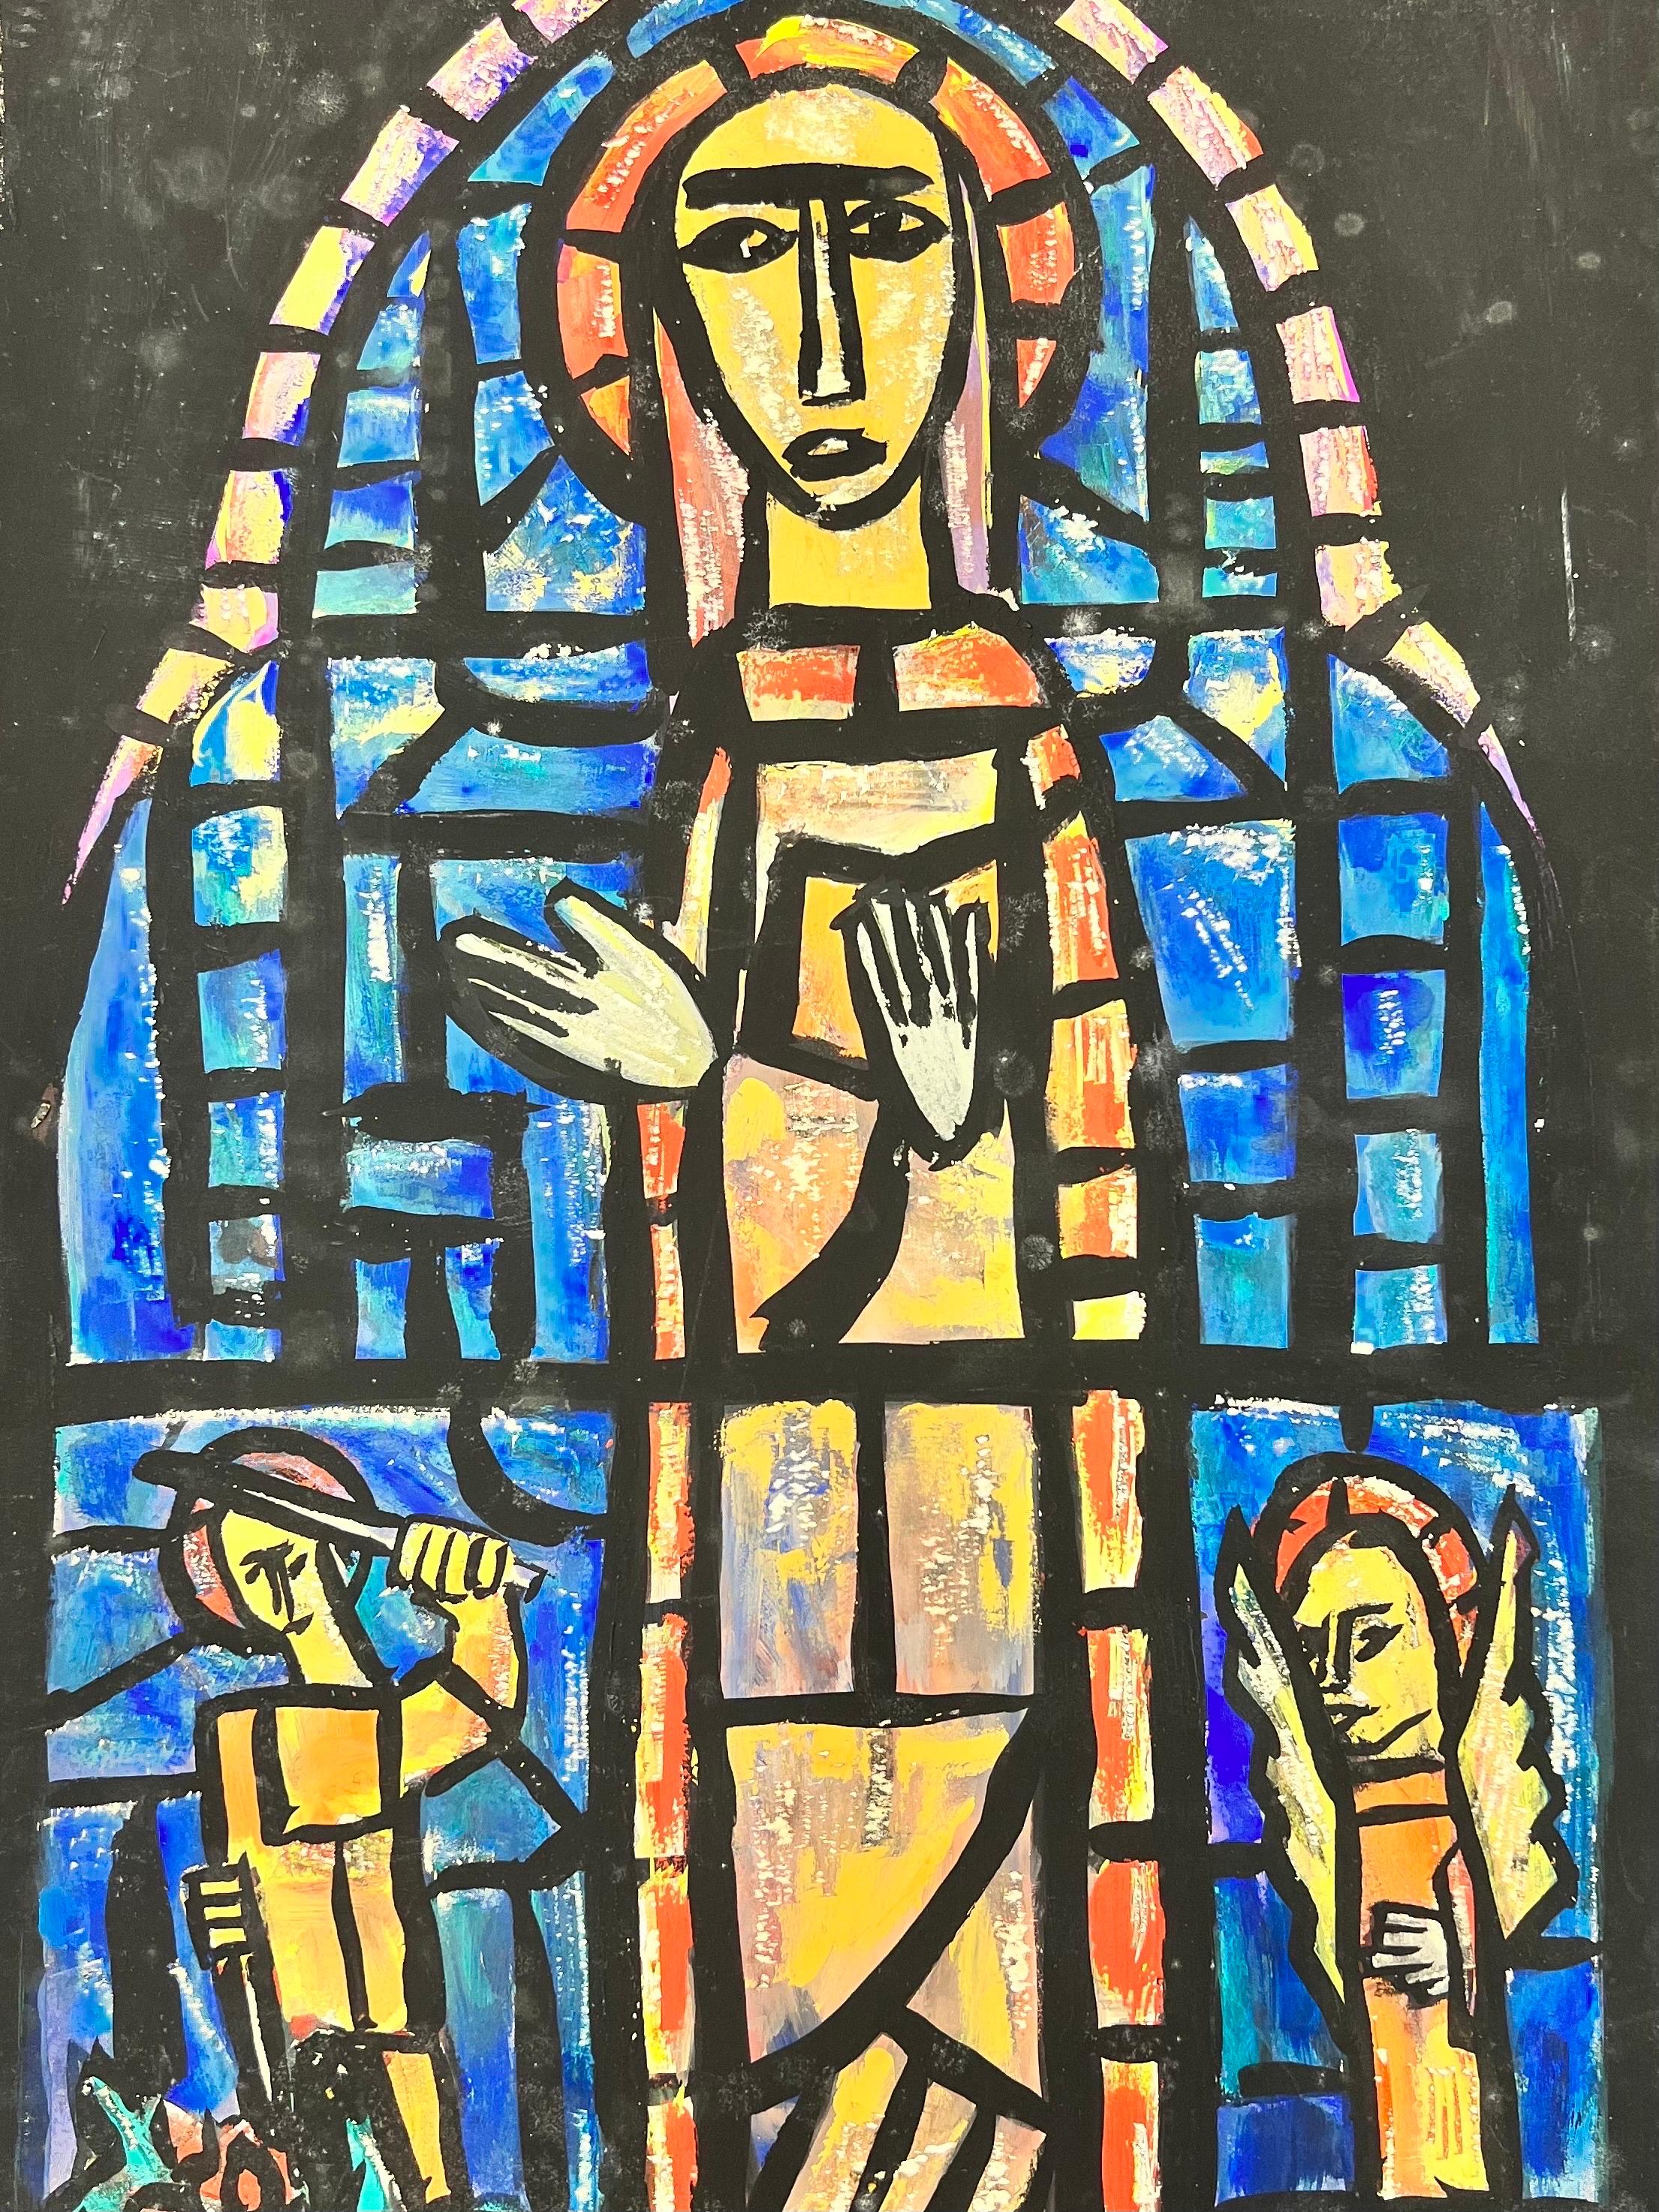 Modernistische/kubistische Malerei der 1950er Jahre - Abstraktes Church's Stained Glass Window – Painting von Bernard Labbe